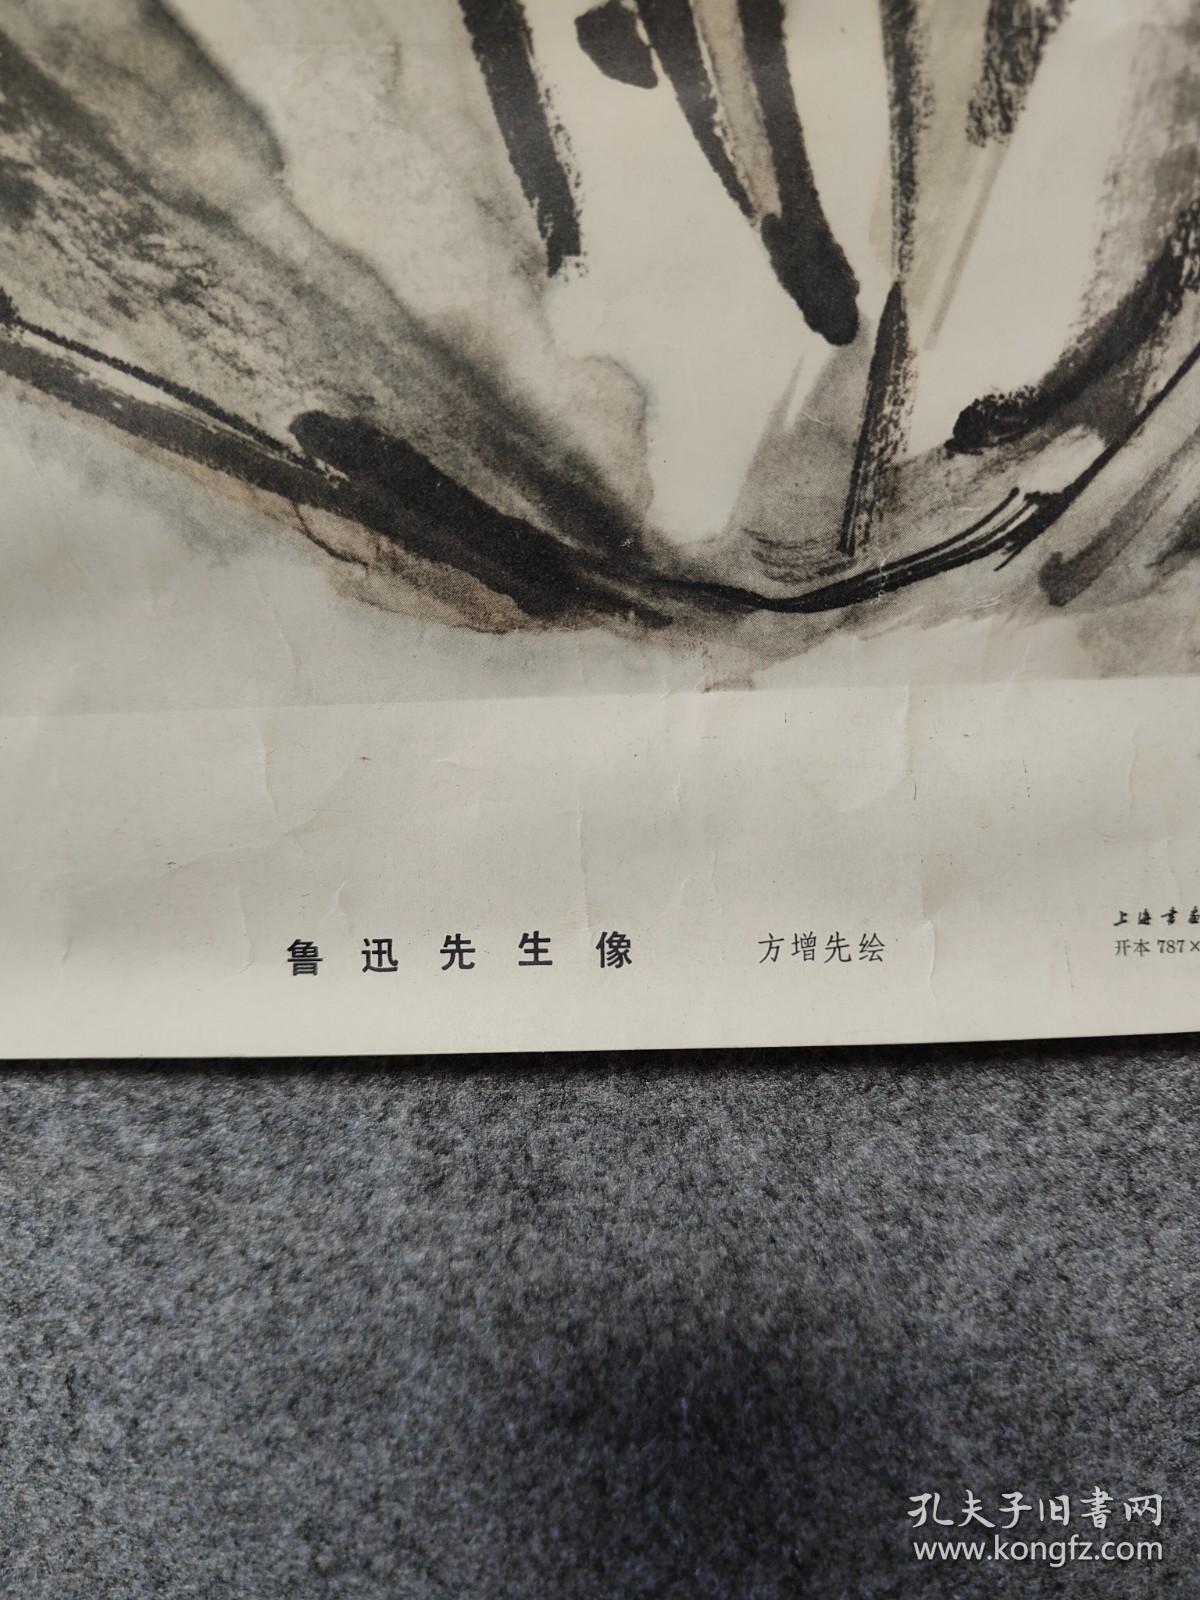 1976年月、上海市美术印刷厂印刷、方增先绘、鲁迅先生像